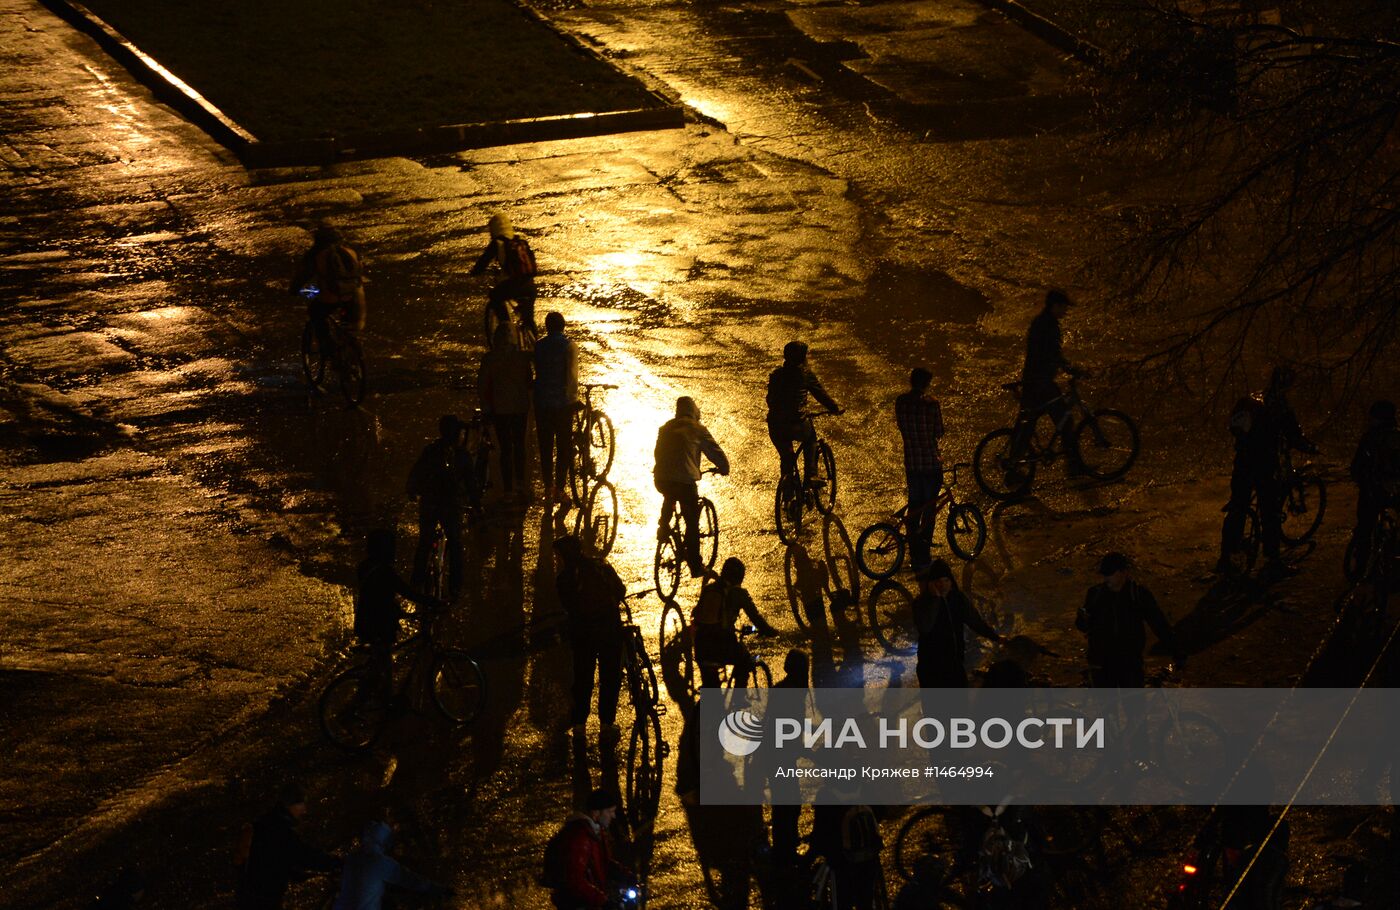 Велопробег "Километры победы" в Новосибирске